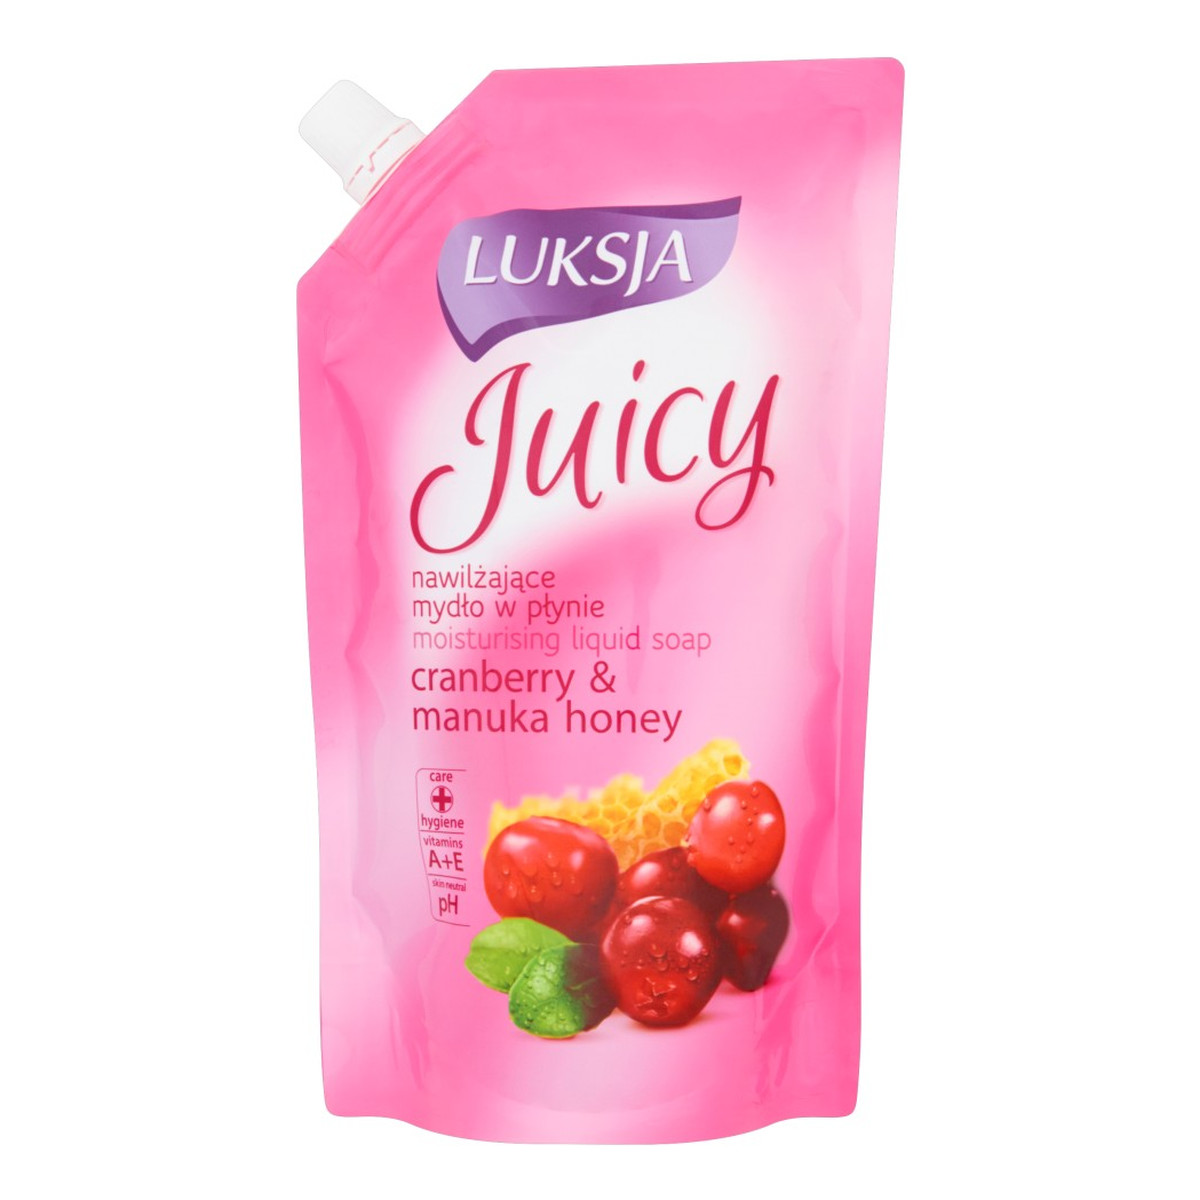 Luksja Juicy Cranberry & Manuka Honey Nawilżające mydło w płynie opakowanie uzupełniające 400ml